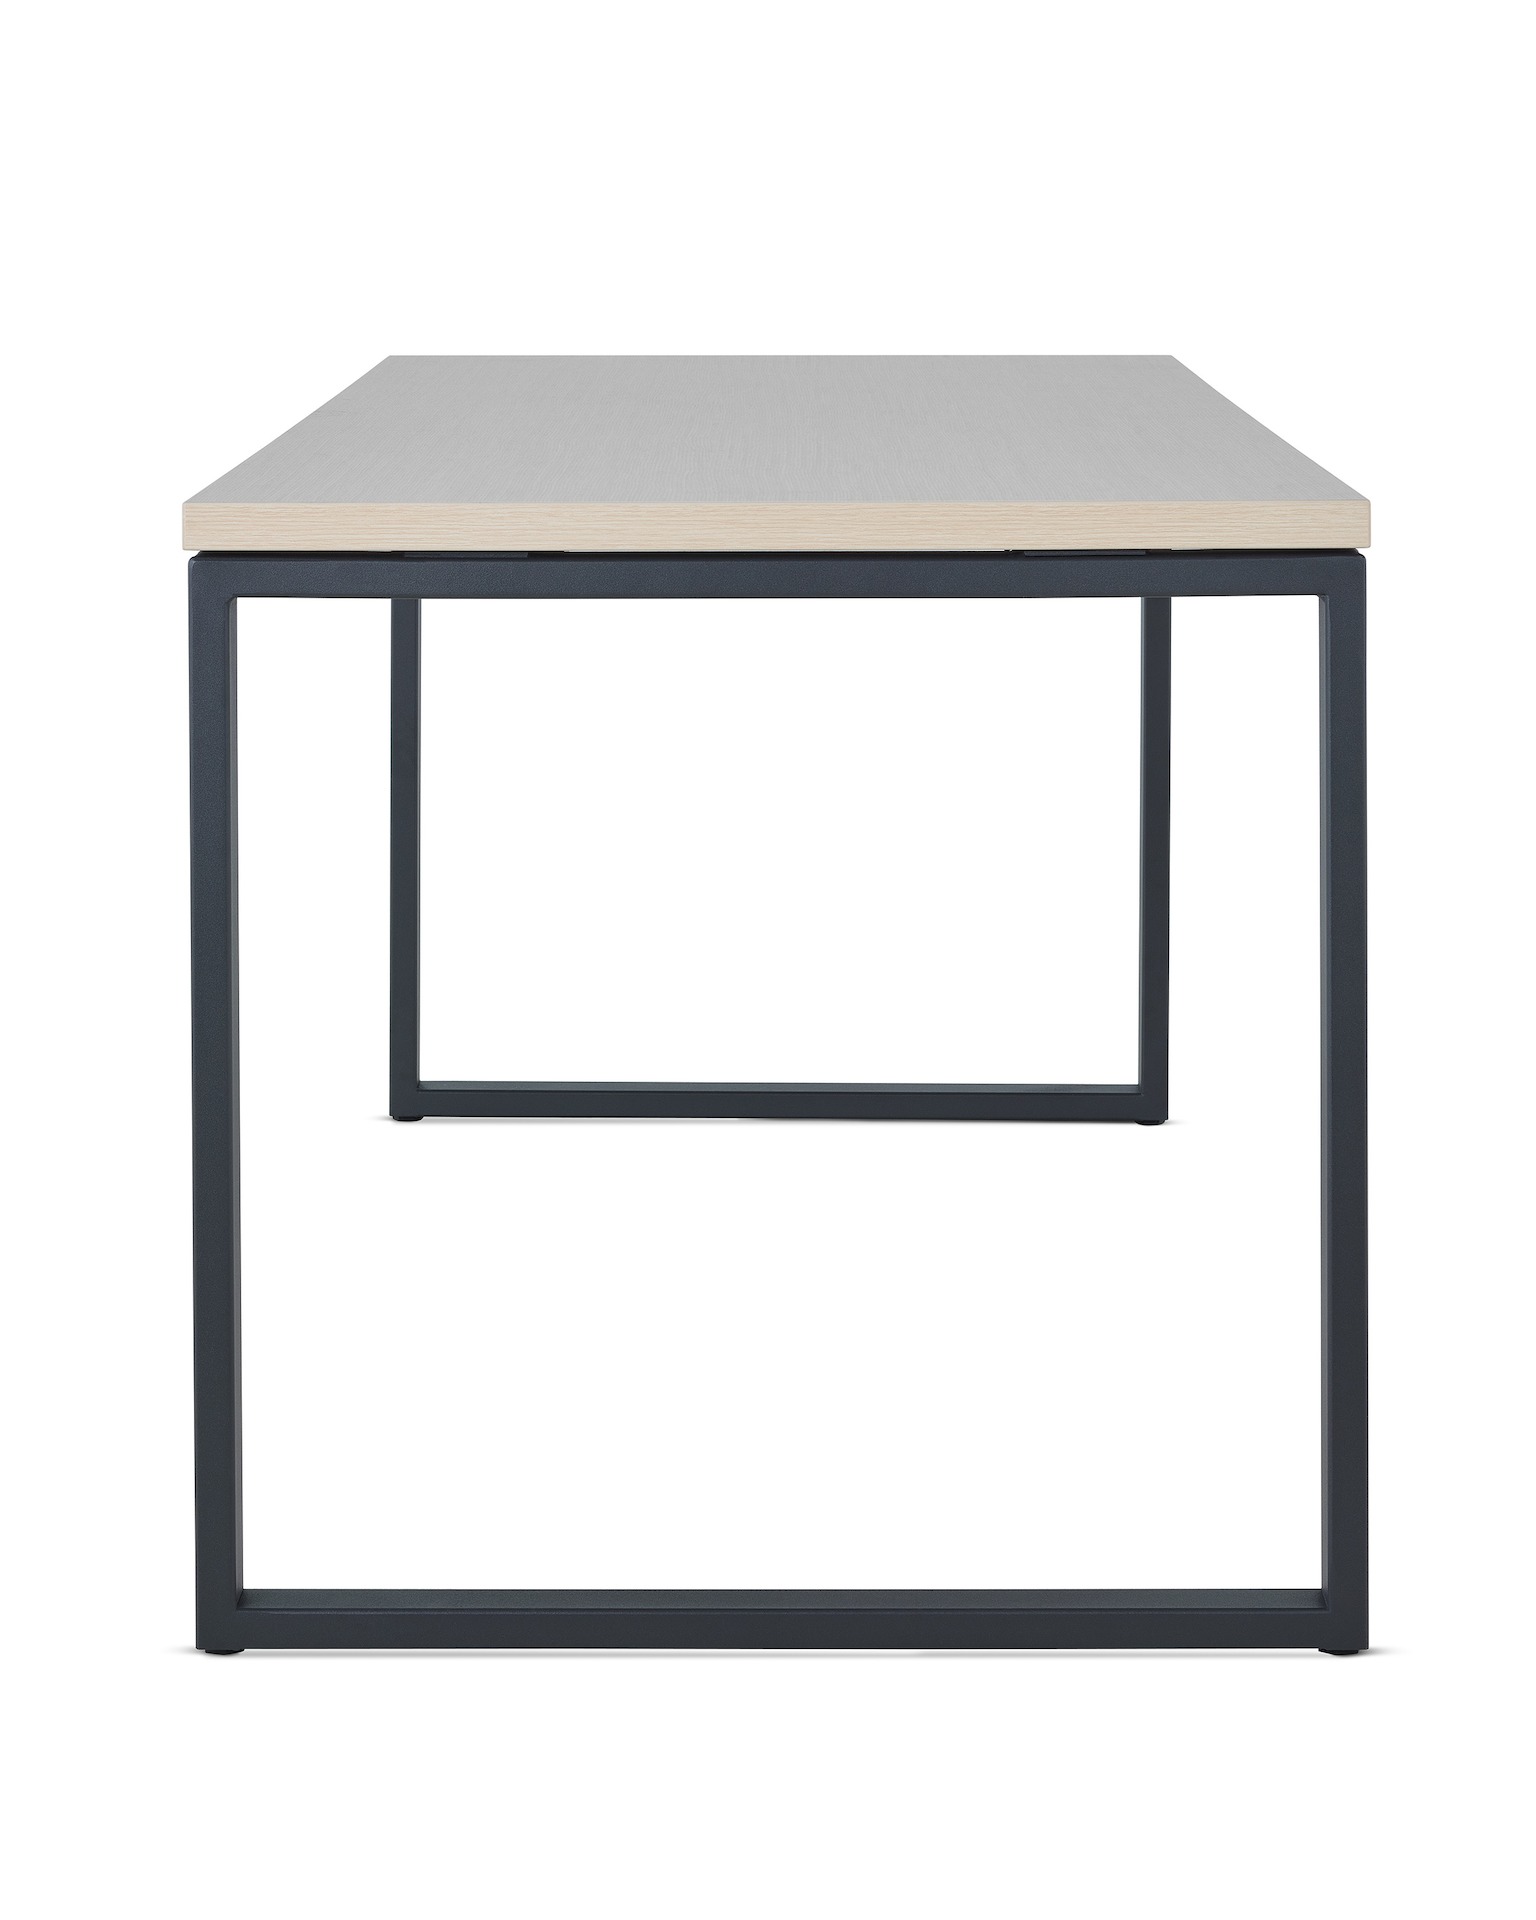 Canvas Metal Desk light wood work surface with black loop legs.